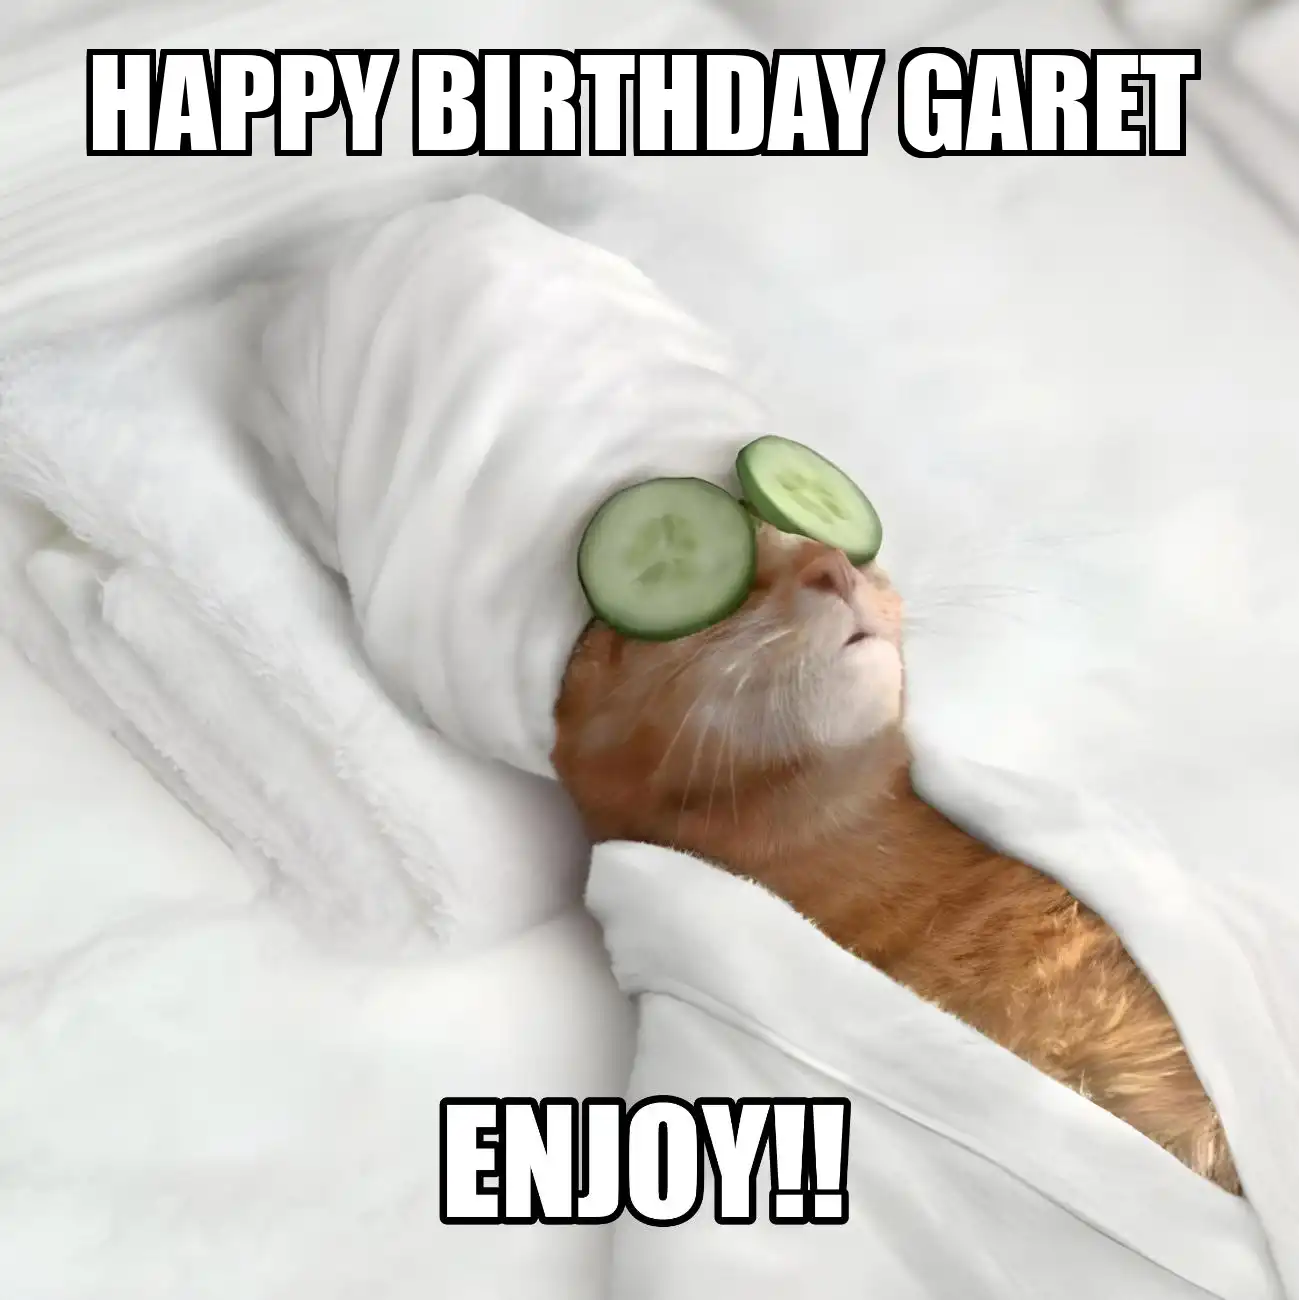 Happy Birthday Garet Enjoy Cat Meme